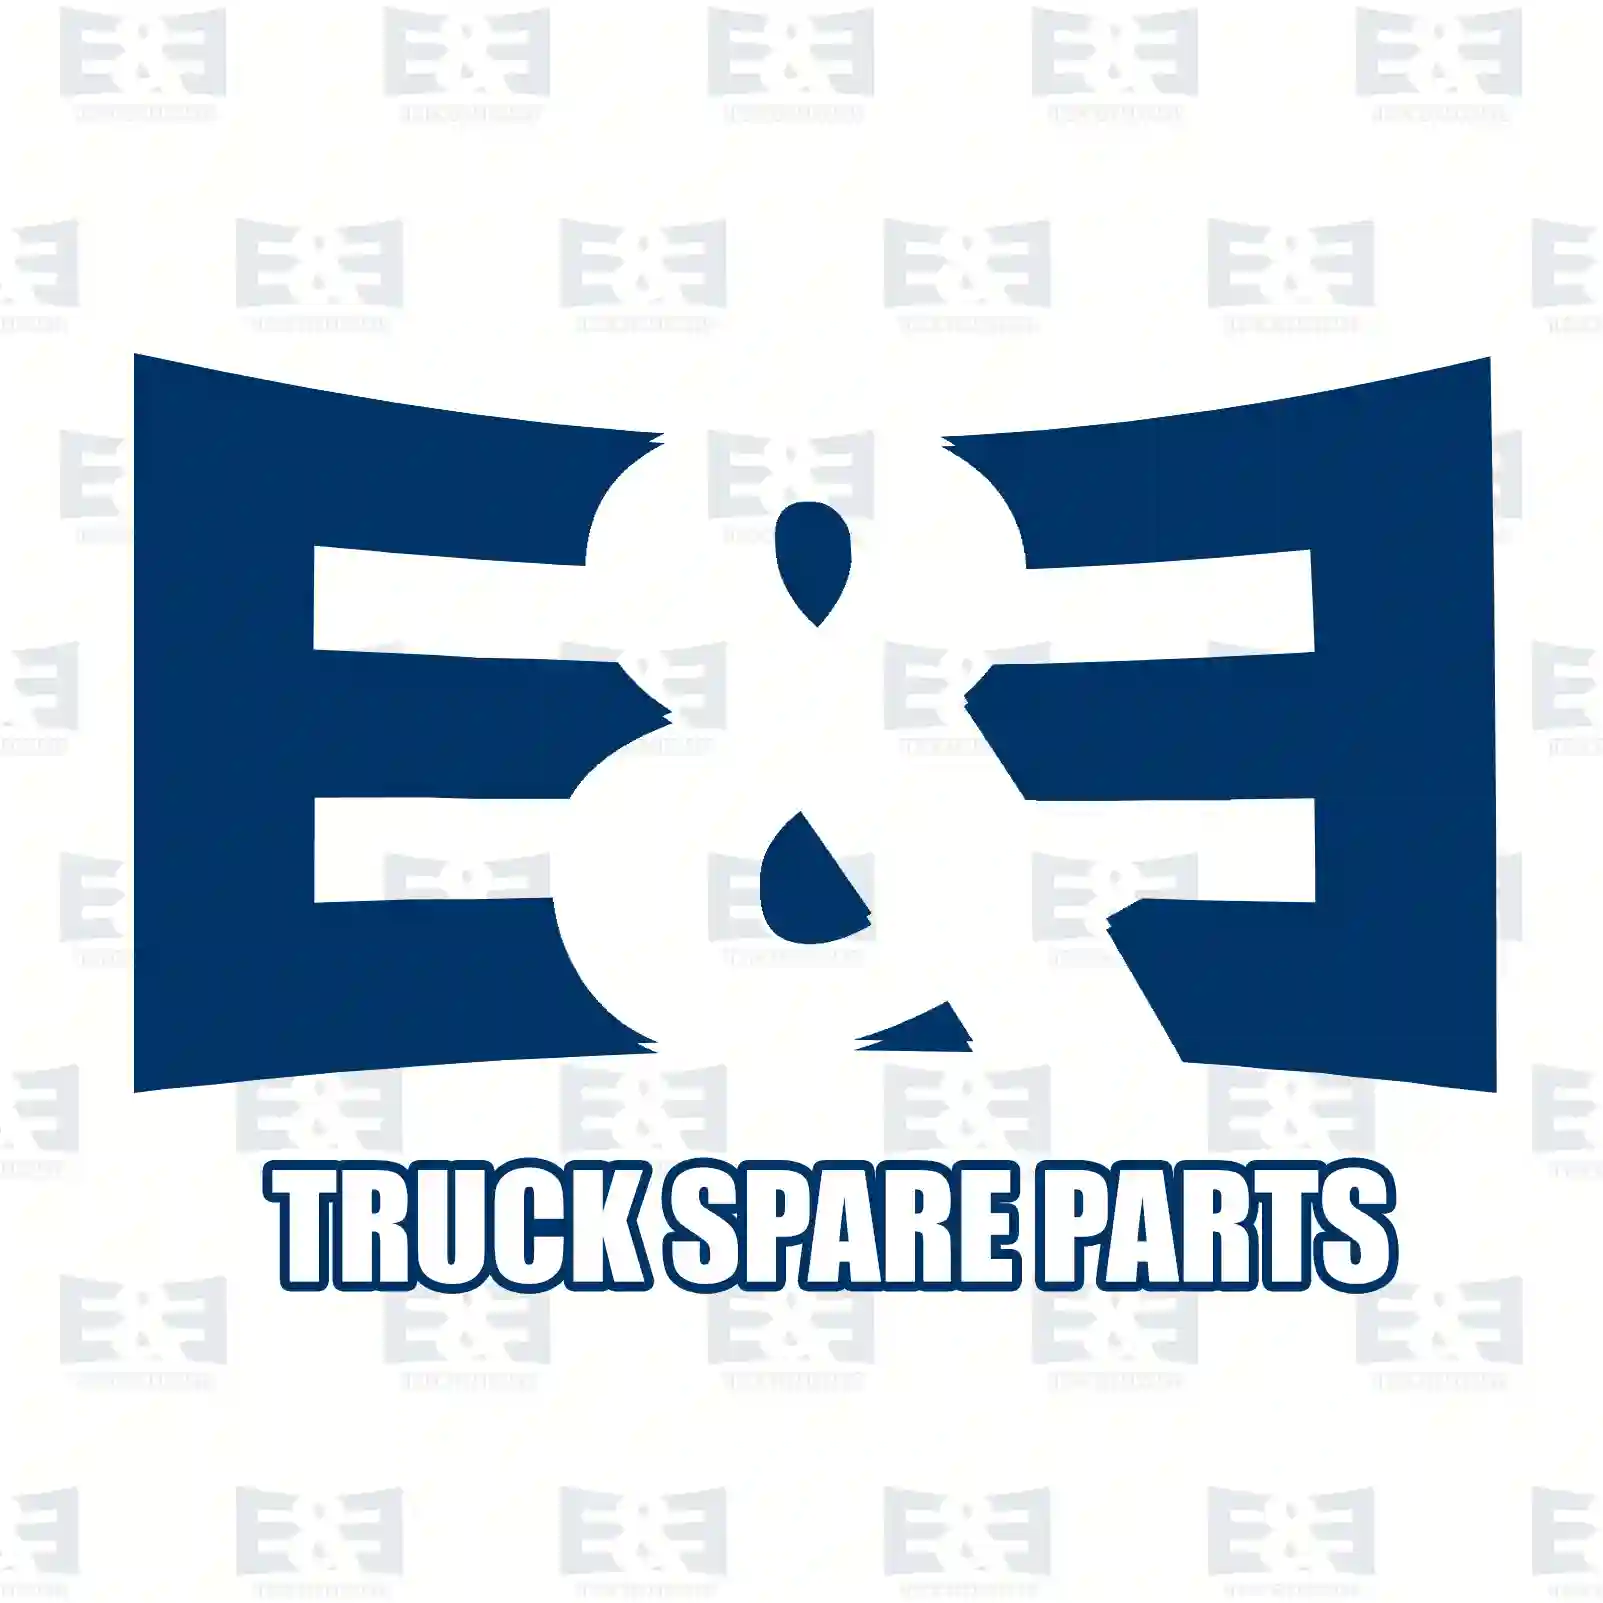  Front grid, center || E&E Truck Spare Parts | Truck Spare Parts, Auotomotive Spare Parts